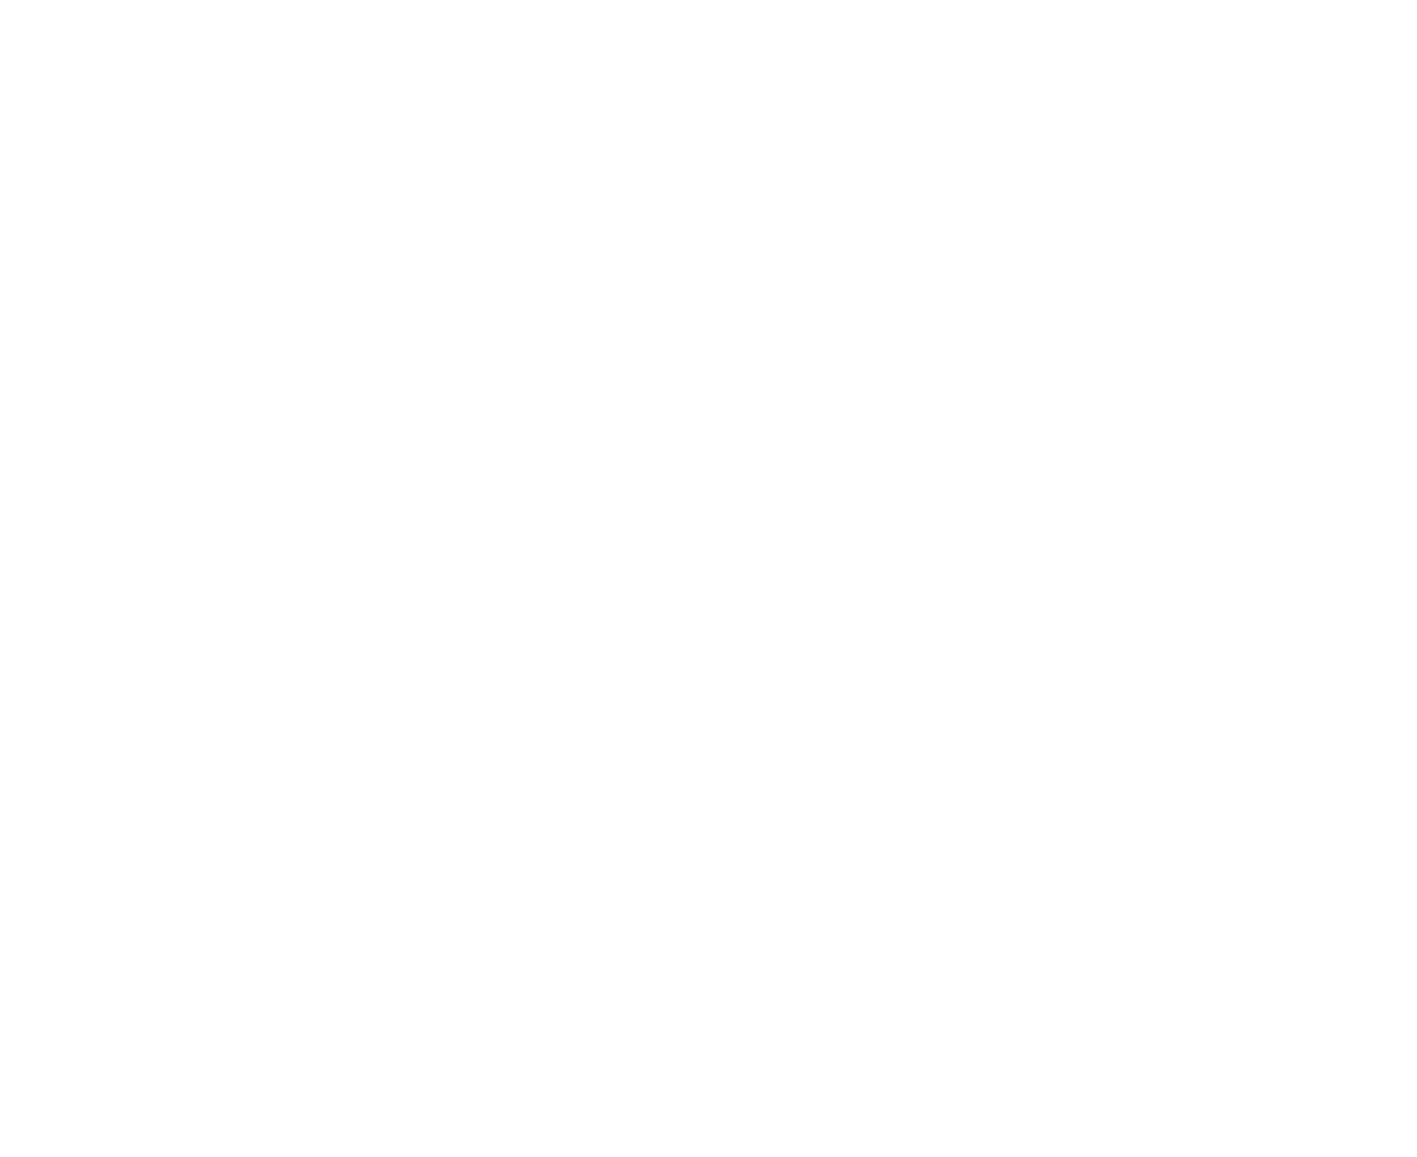 Sales Impact